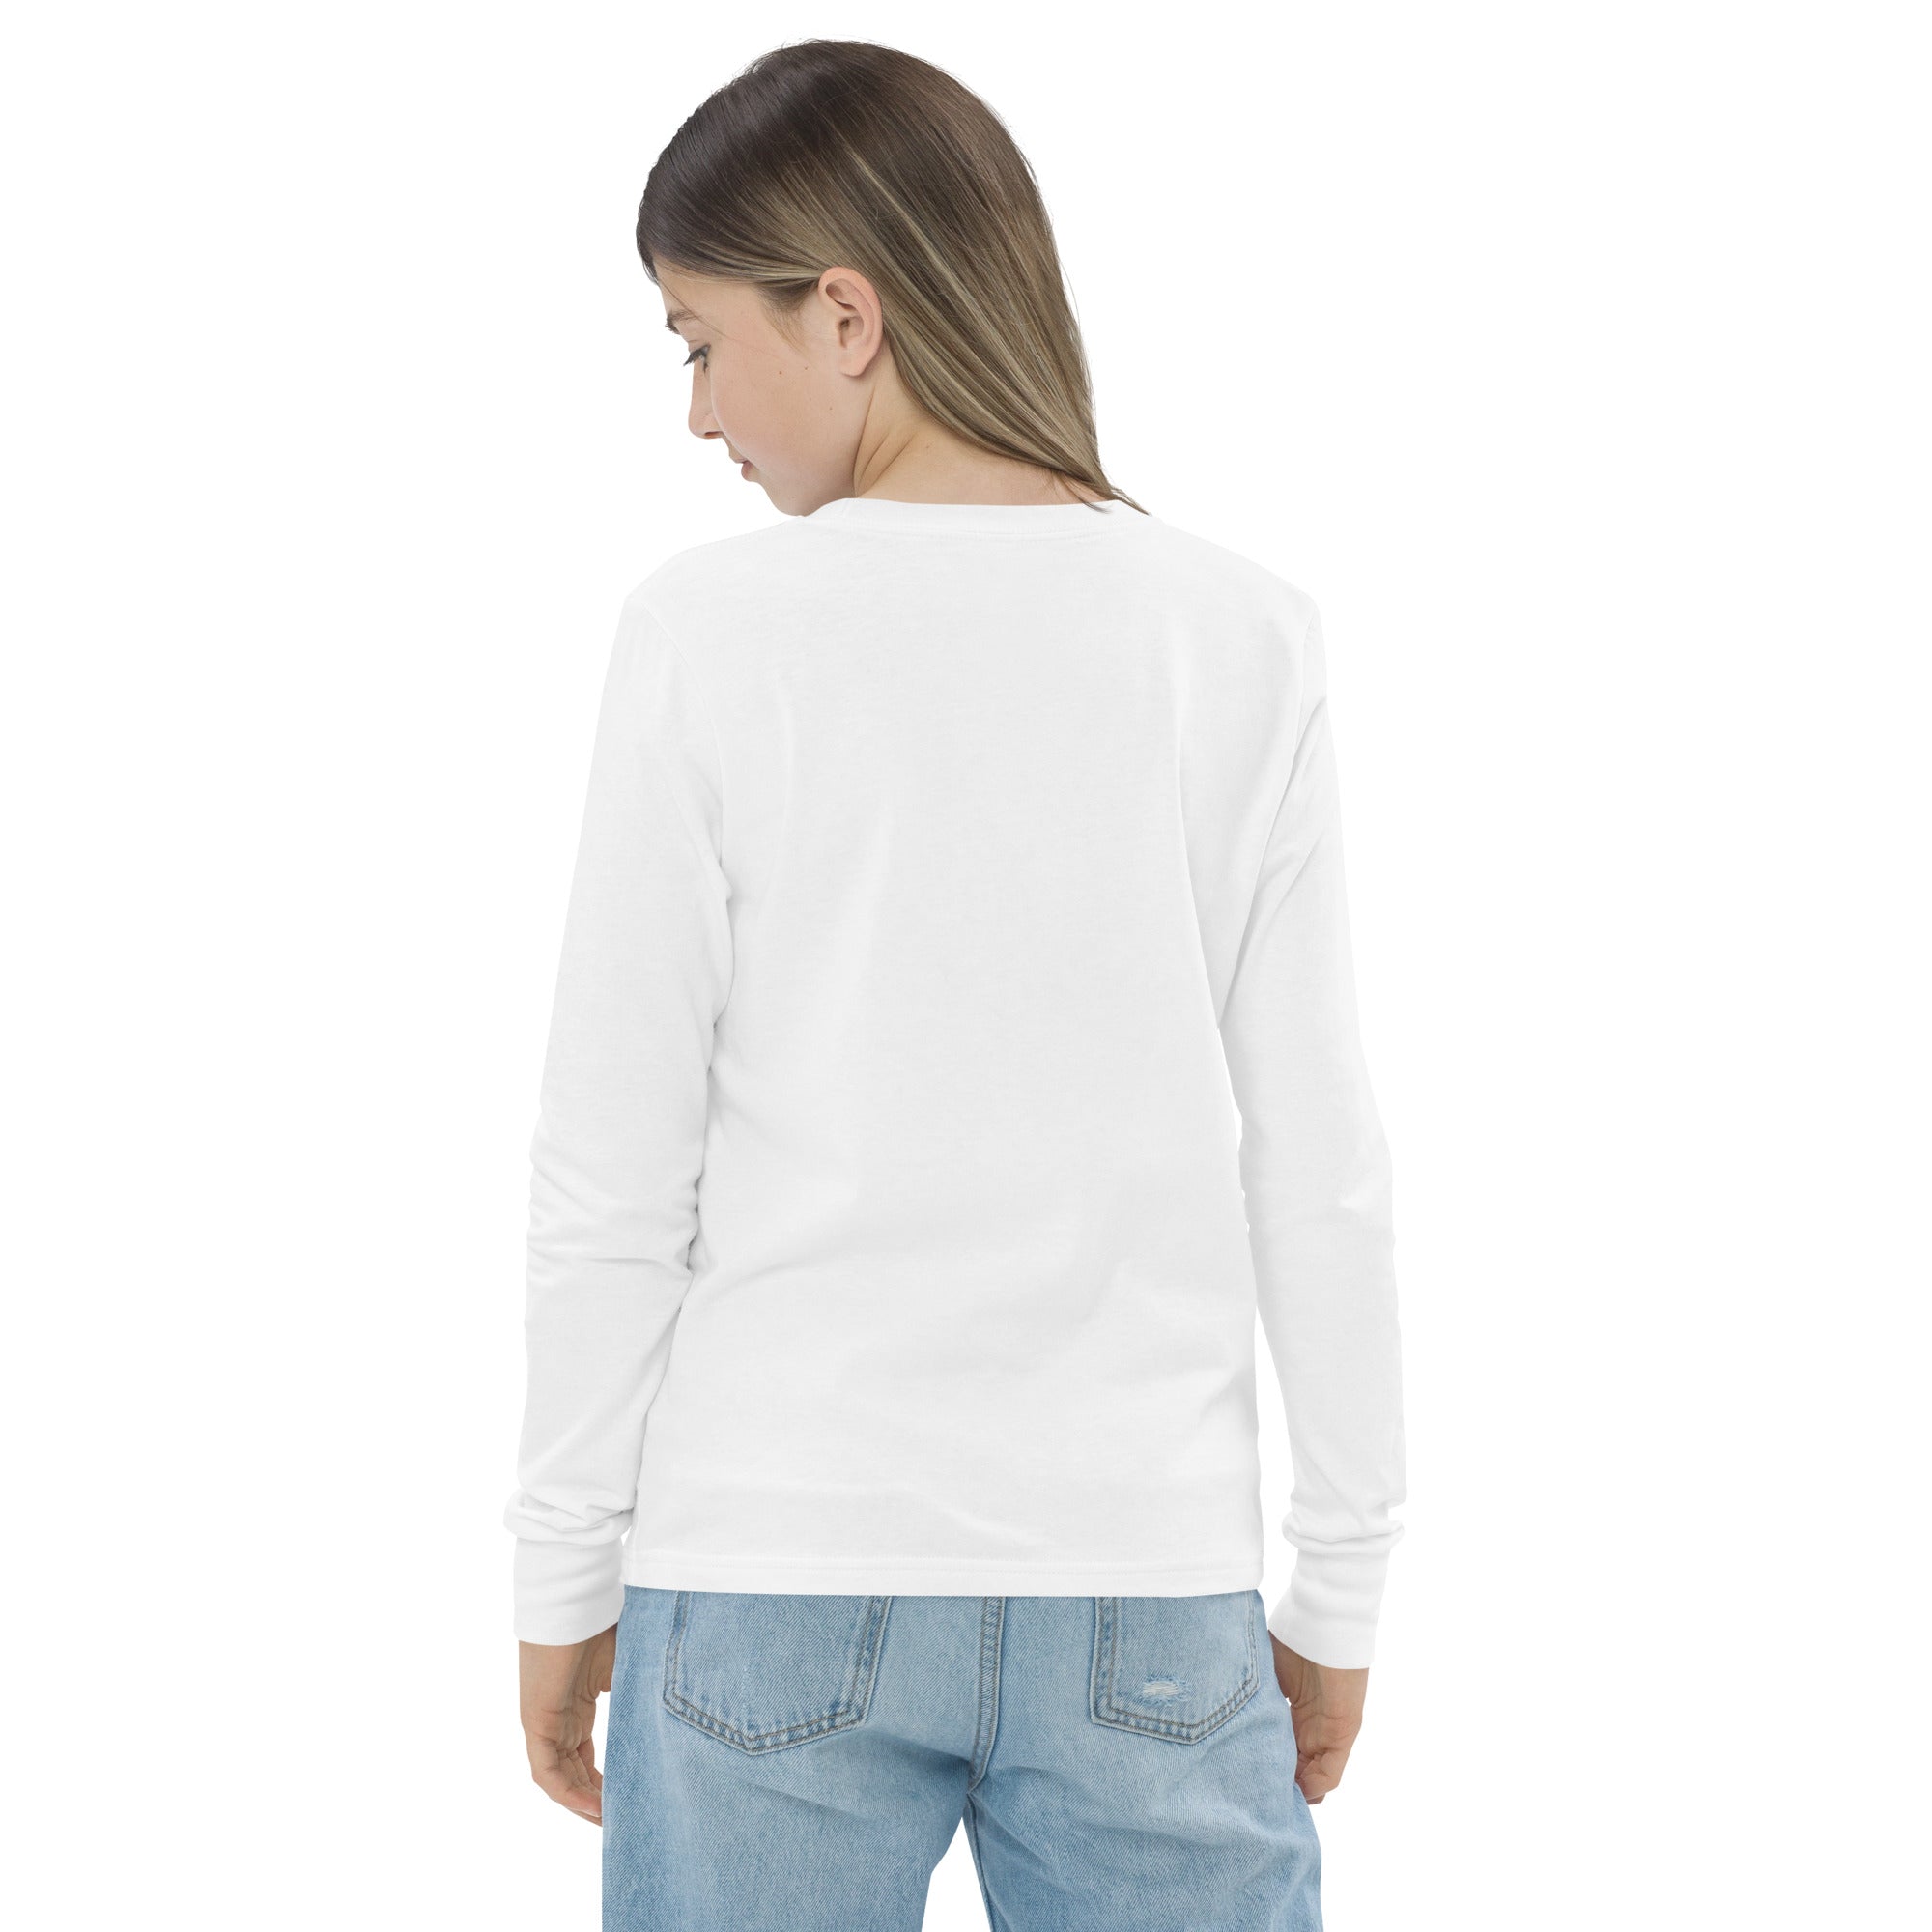 Unisex Youth Long Sleeve Shirt-19